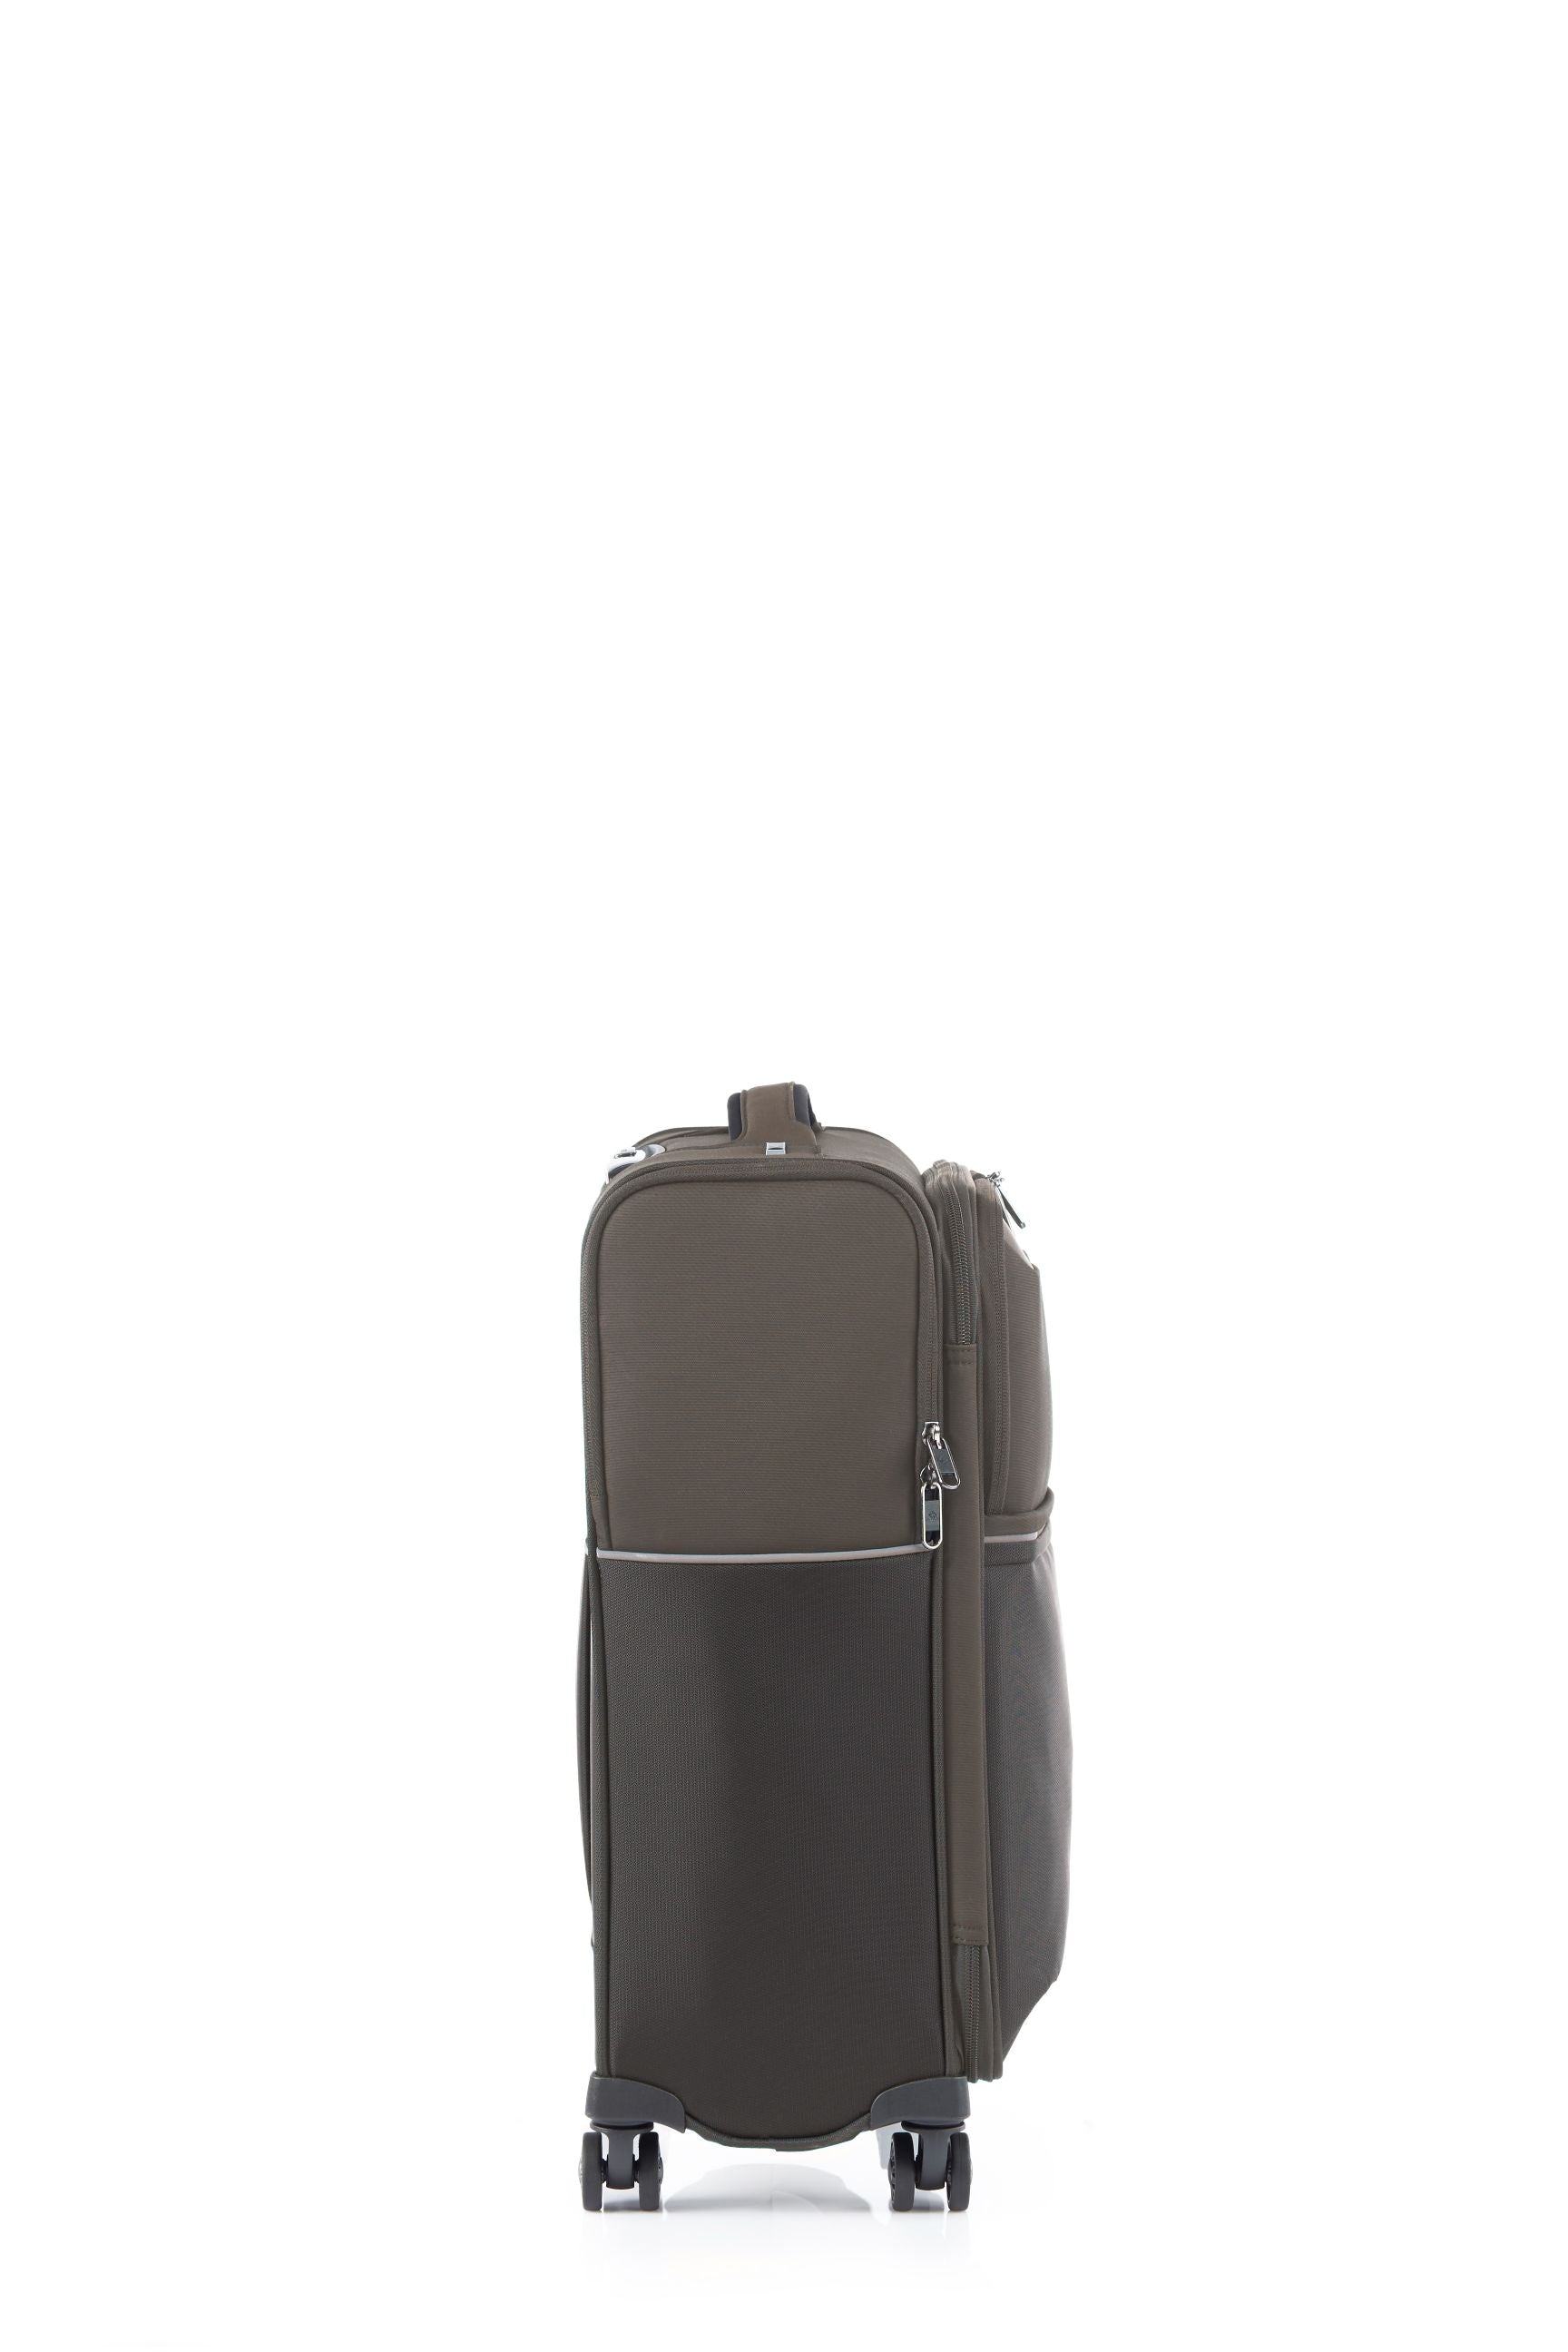 Samsonite - 73HR 55cm Small Suitcase - Platinum Grey-4